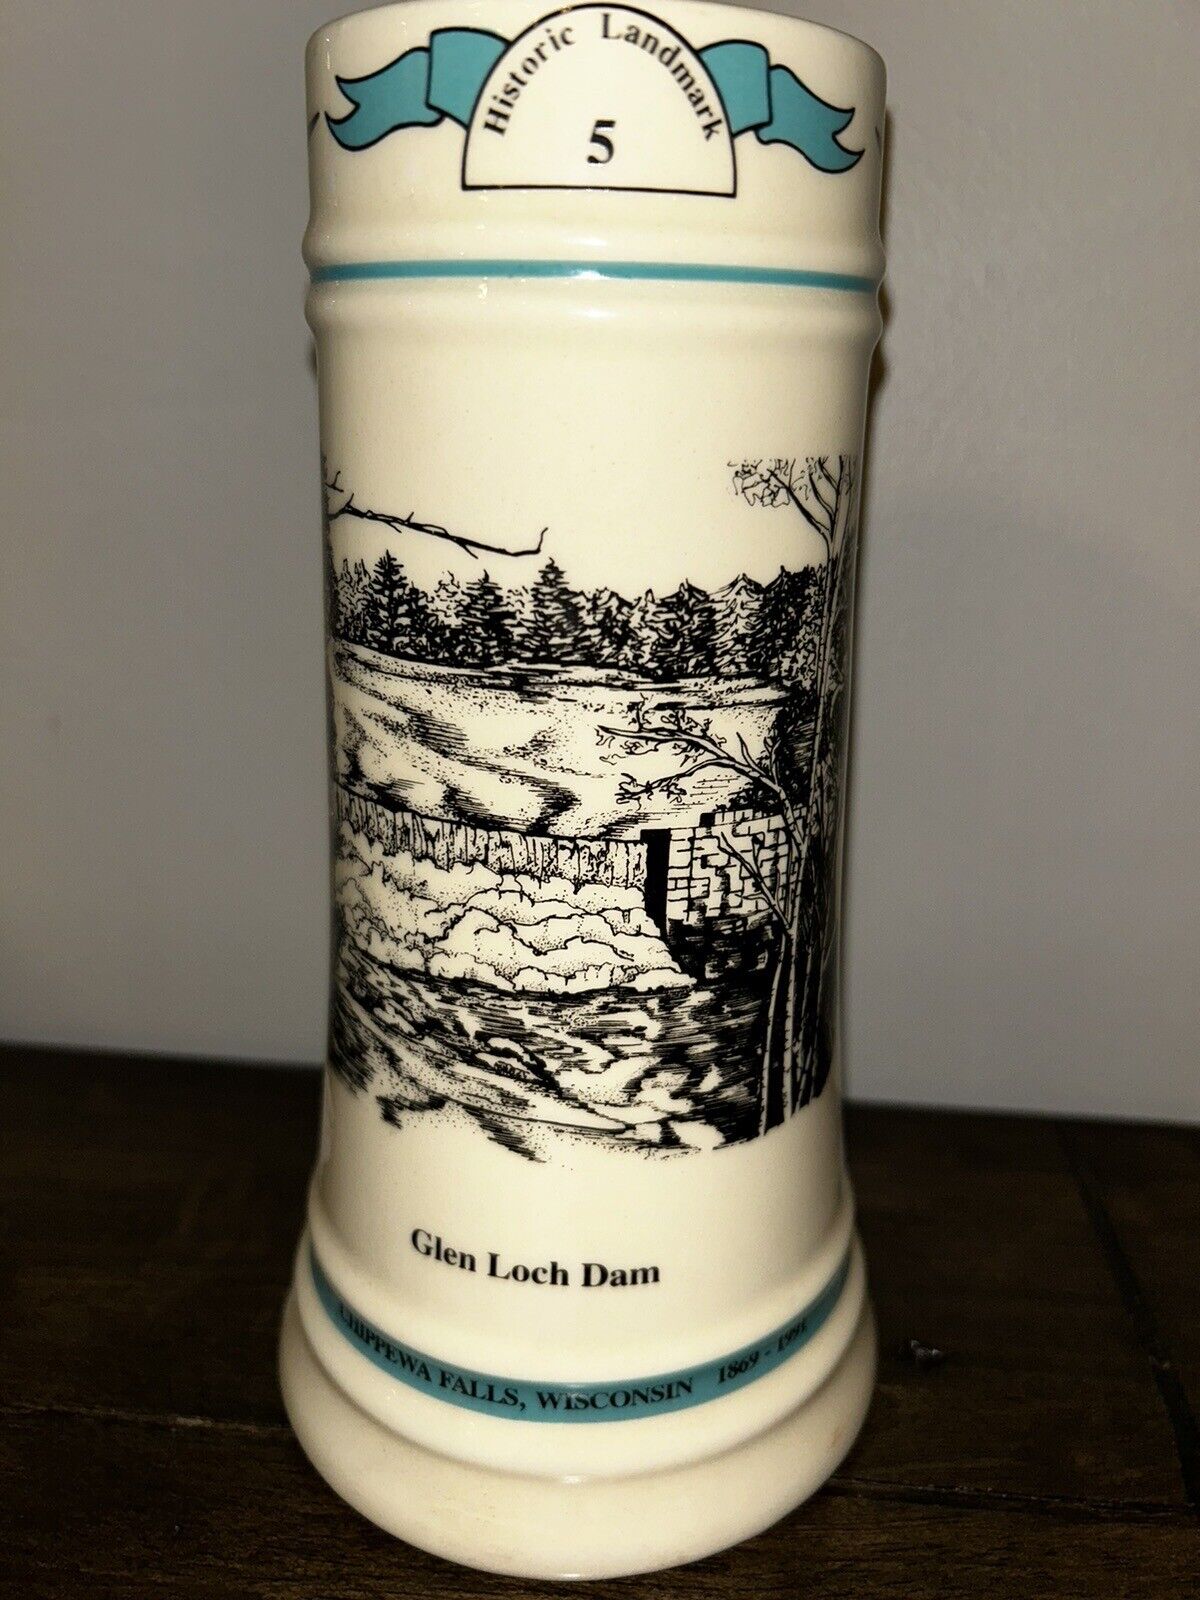 Leinenkugels Historic Landmark 5 Glen Loch Dam Beer Stein Limited Addition #478